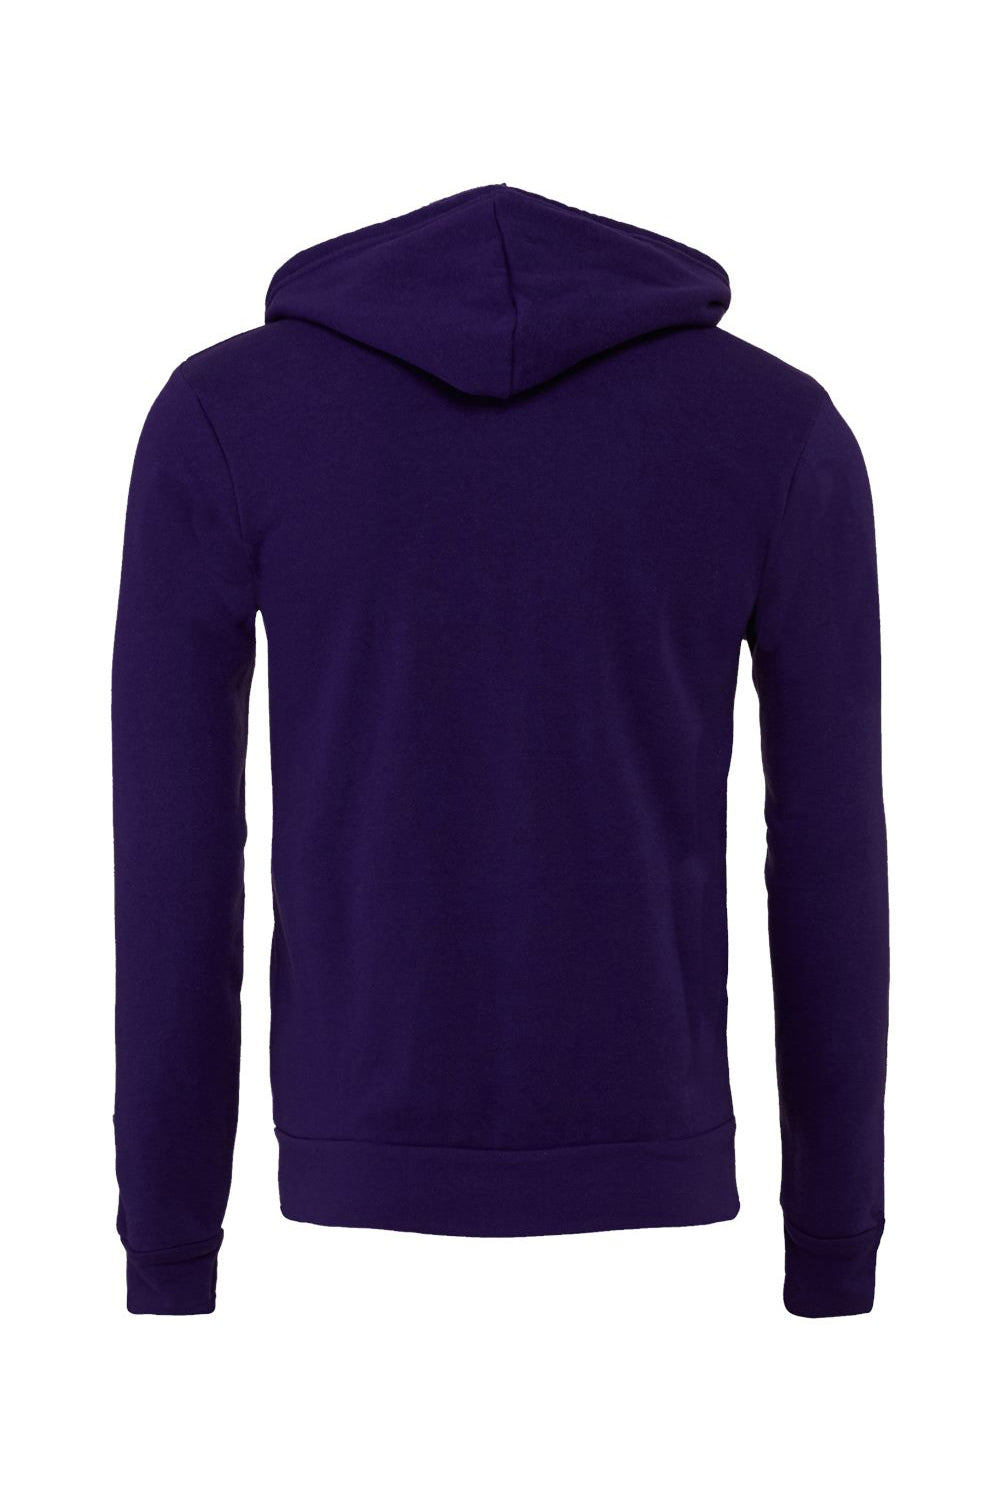 Bella + Canvas BC3739/3739 Mens Fleece Full Zip Hooded Sweatshirt Hoodie Team Purple Flat Back